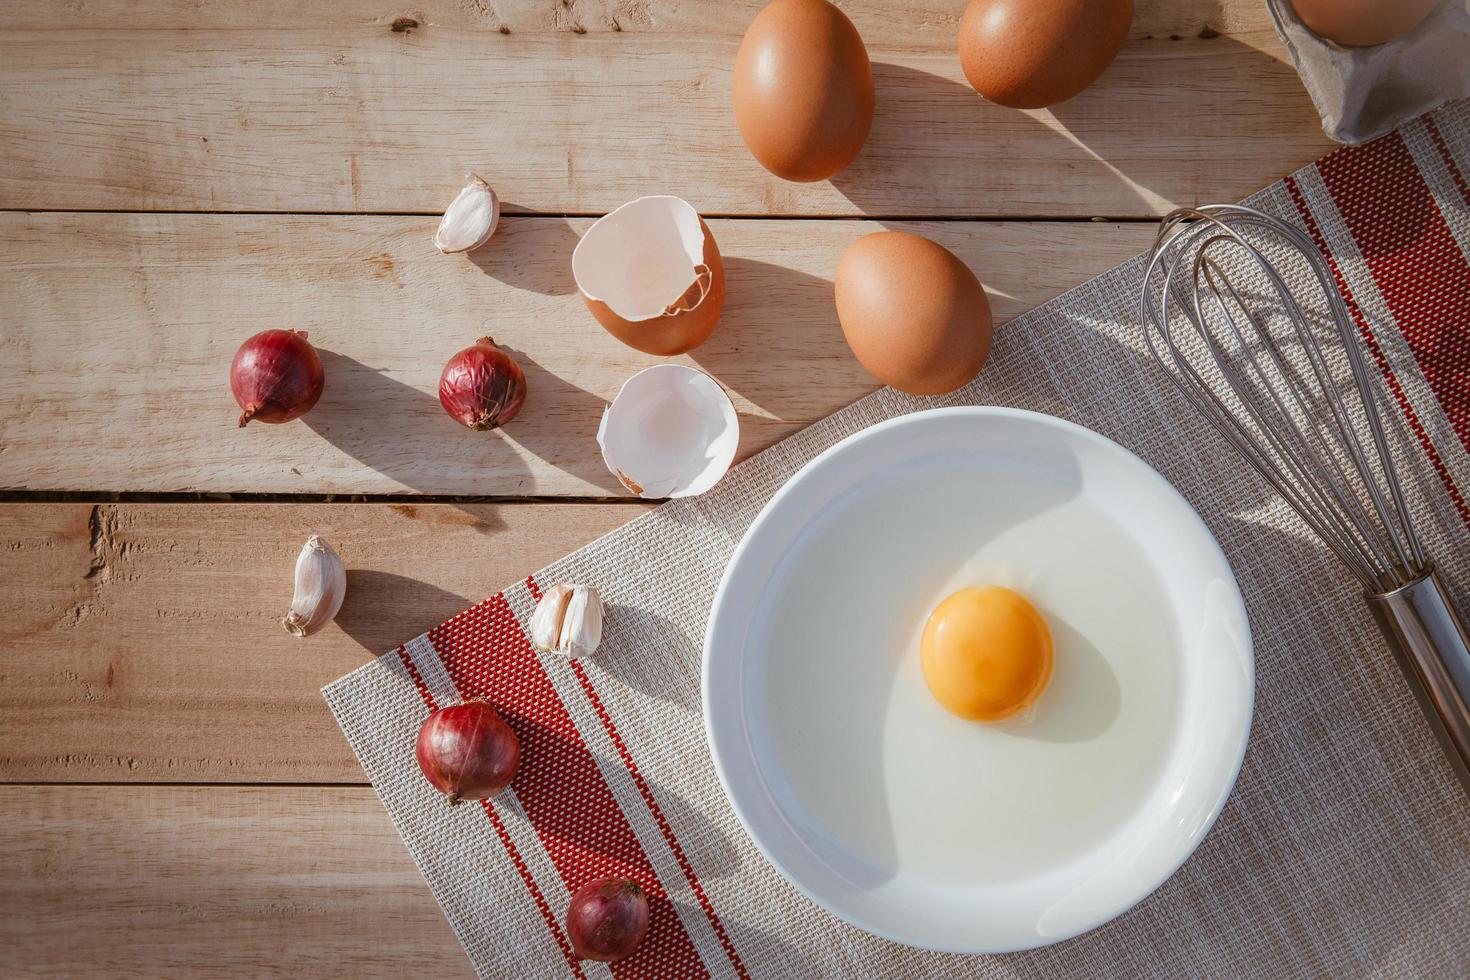 los huevos se ponen en bandejas de madera y tienen huevos rotos. foto